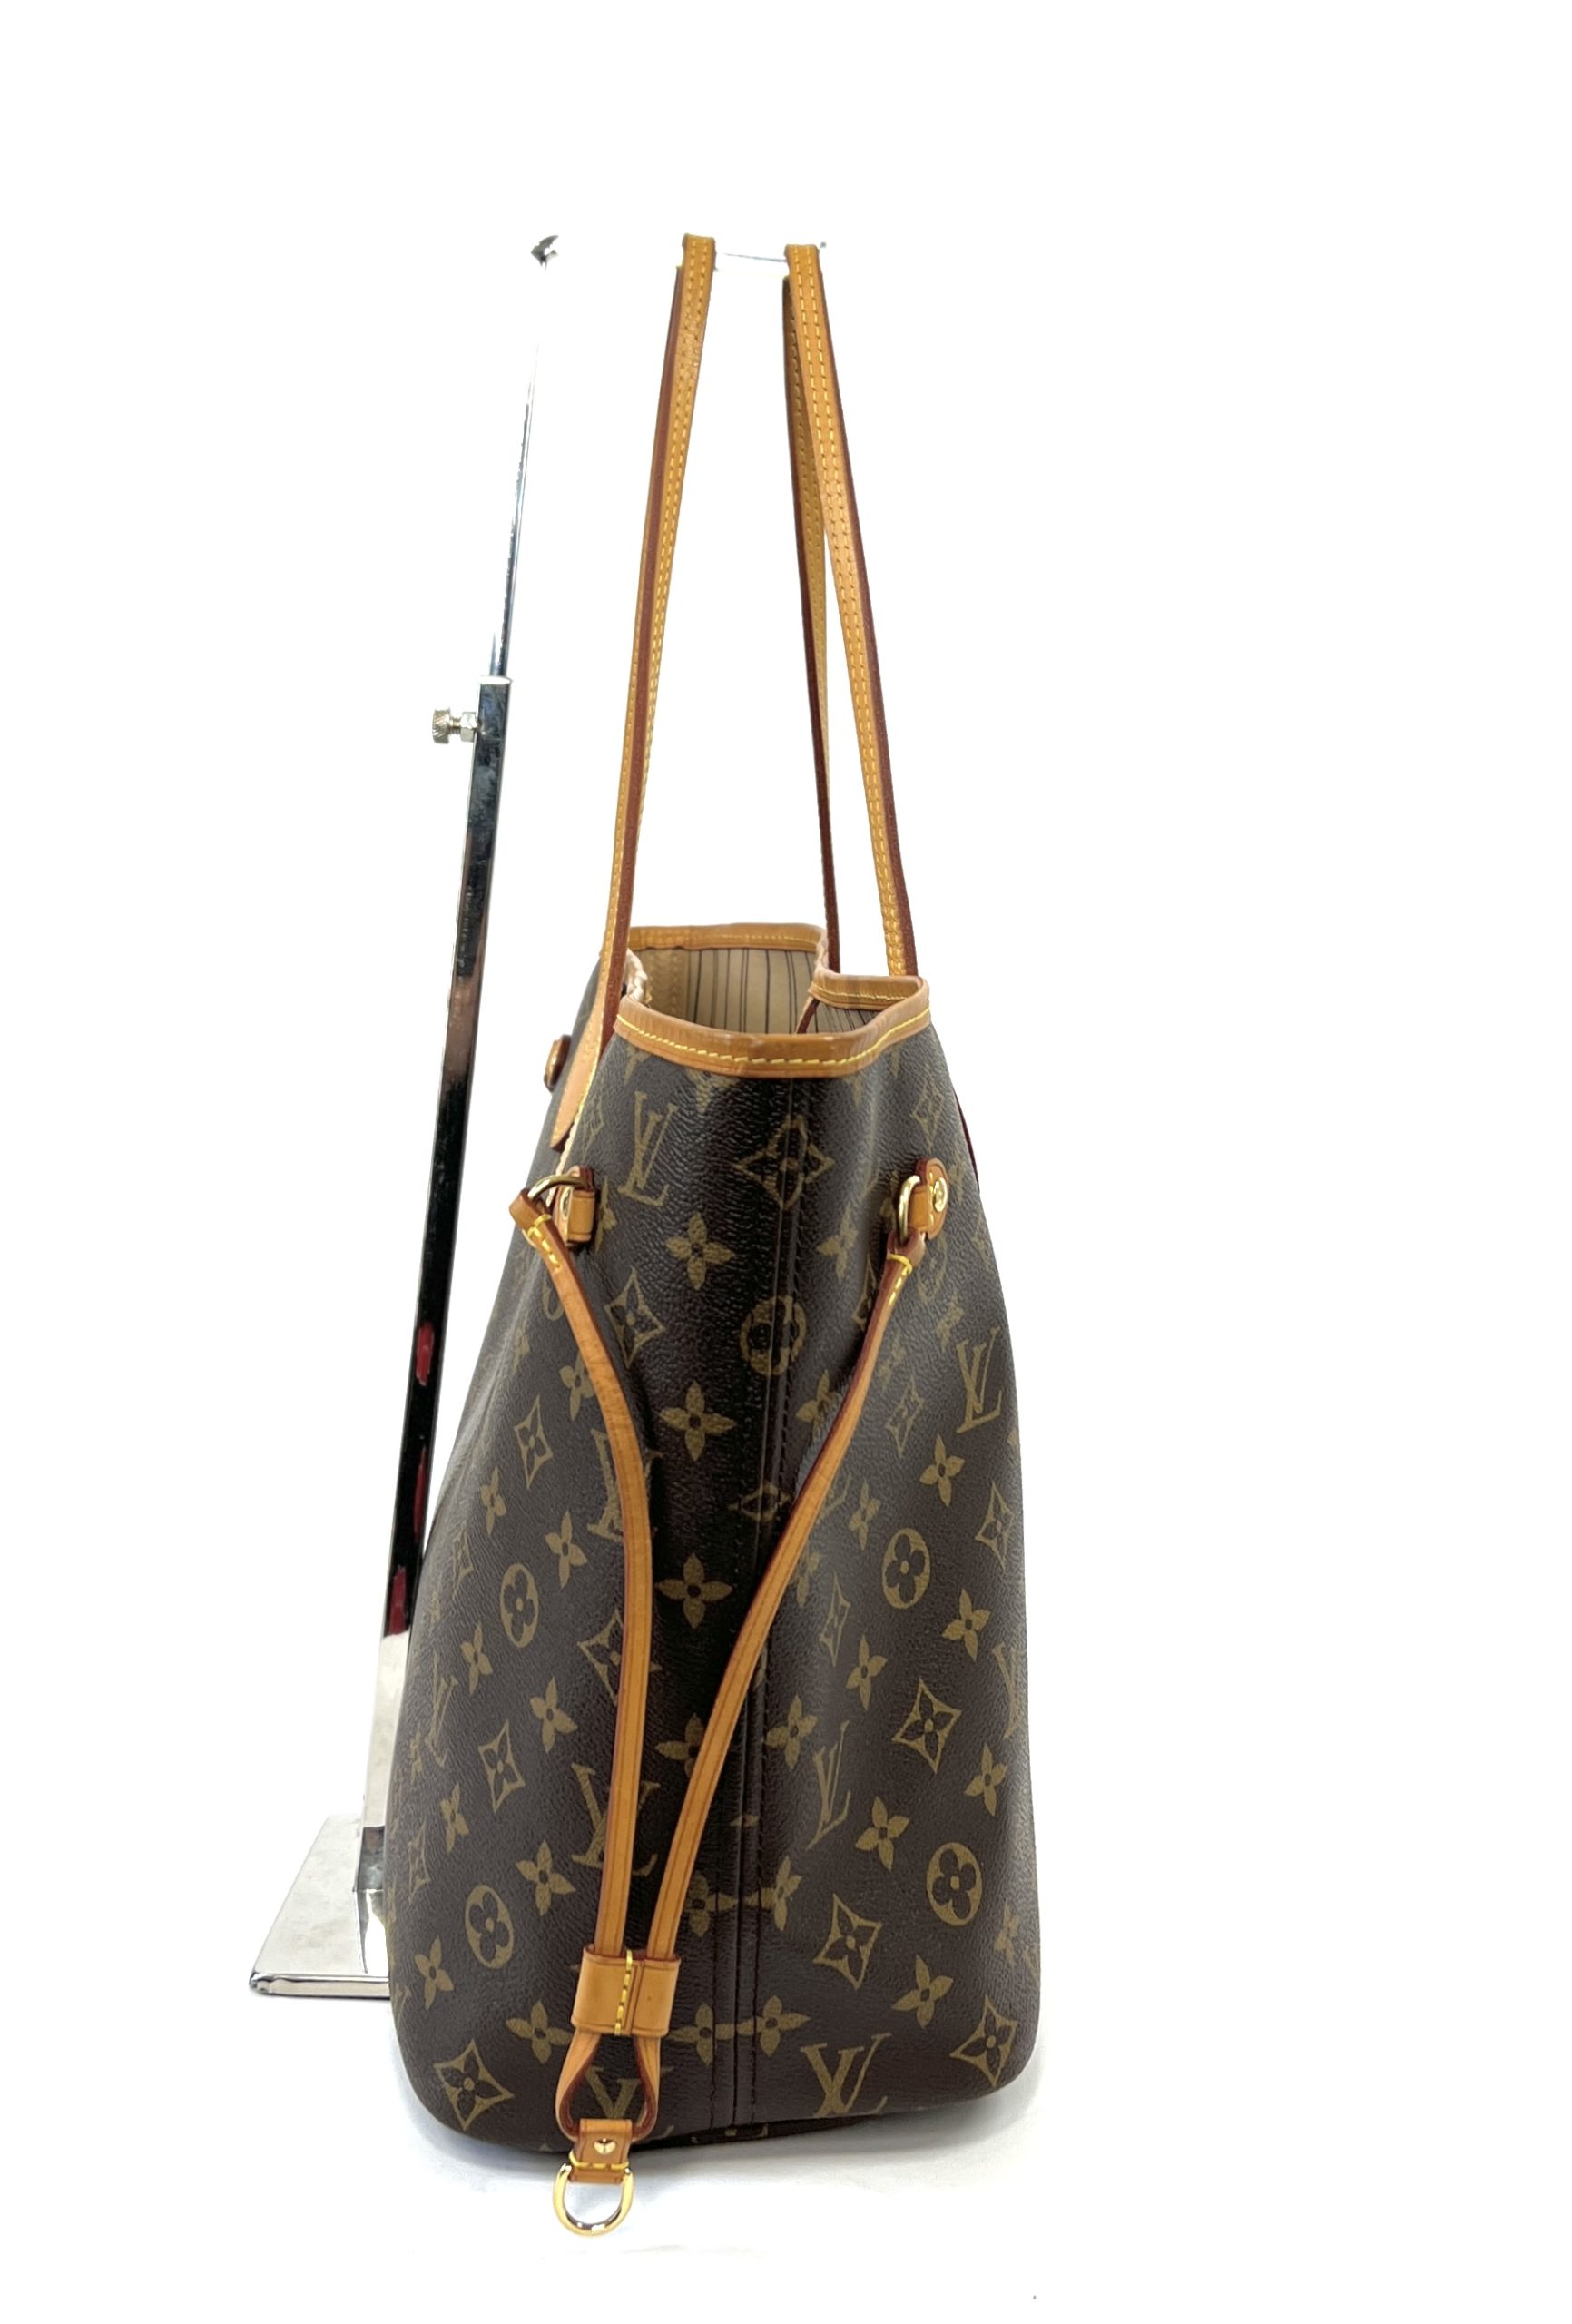 Auth Louis Vuitton Neverfull MM Jungle Dots Limited Monogram Canvas  Shoulder Bag